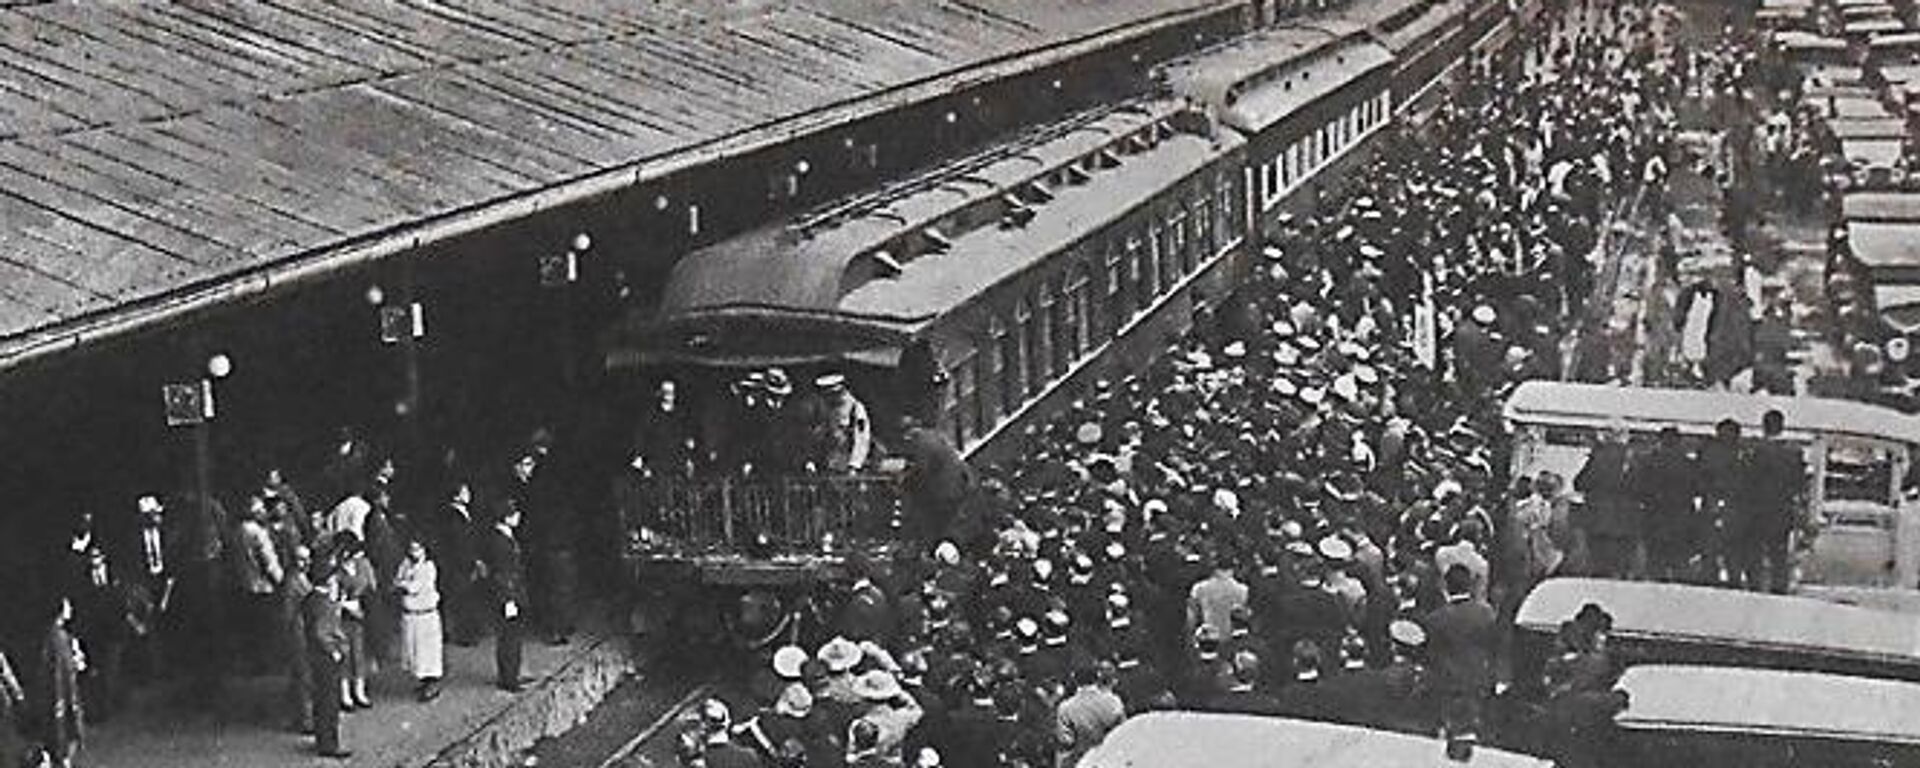 Tren Olivo, histórico medio de transporte de uso presidencial. - Sputnik Mundo, 1920, 10.05.2022